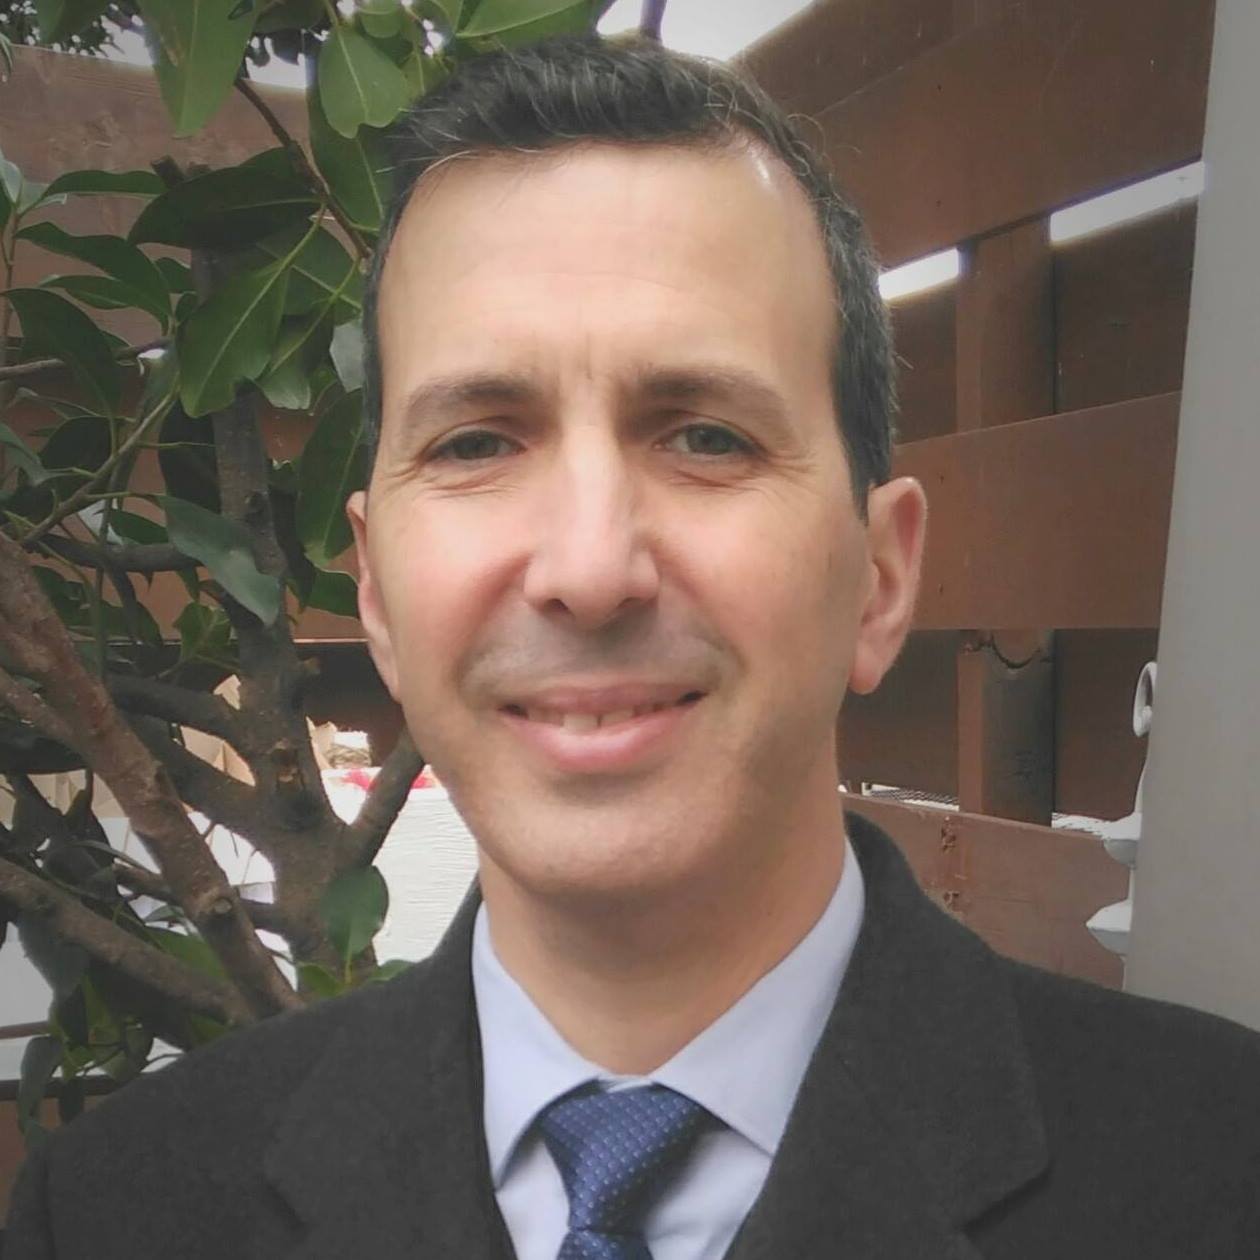 Francisco Liñán Alcalde: “El intento de comprender al emprendedor. Evolución y futuro en la investigación sobre emprendimiento”.